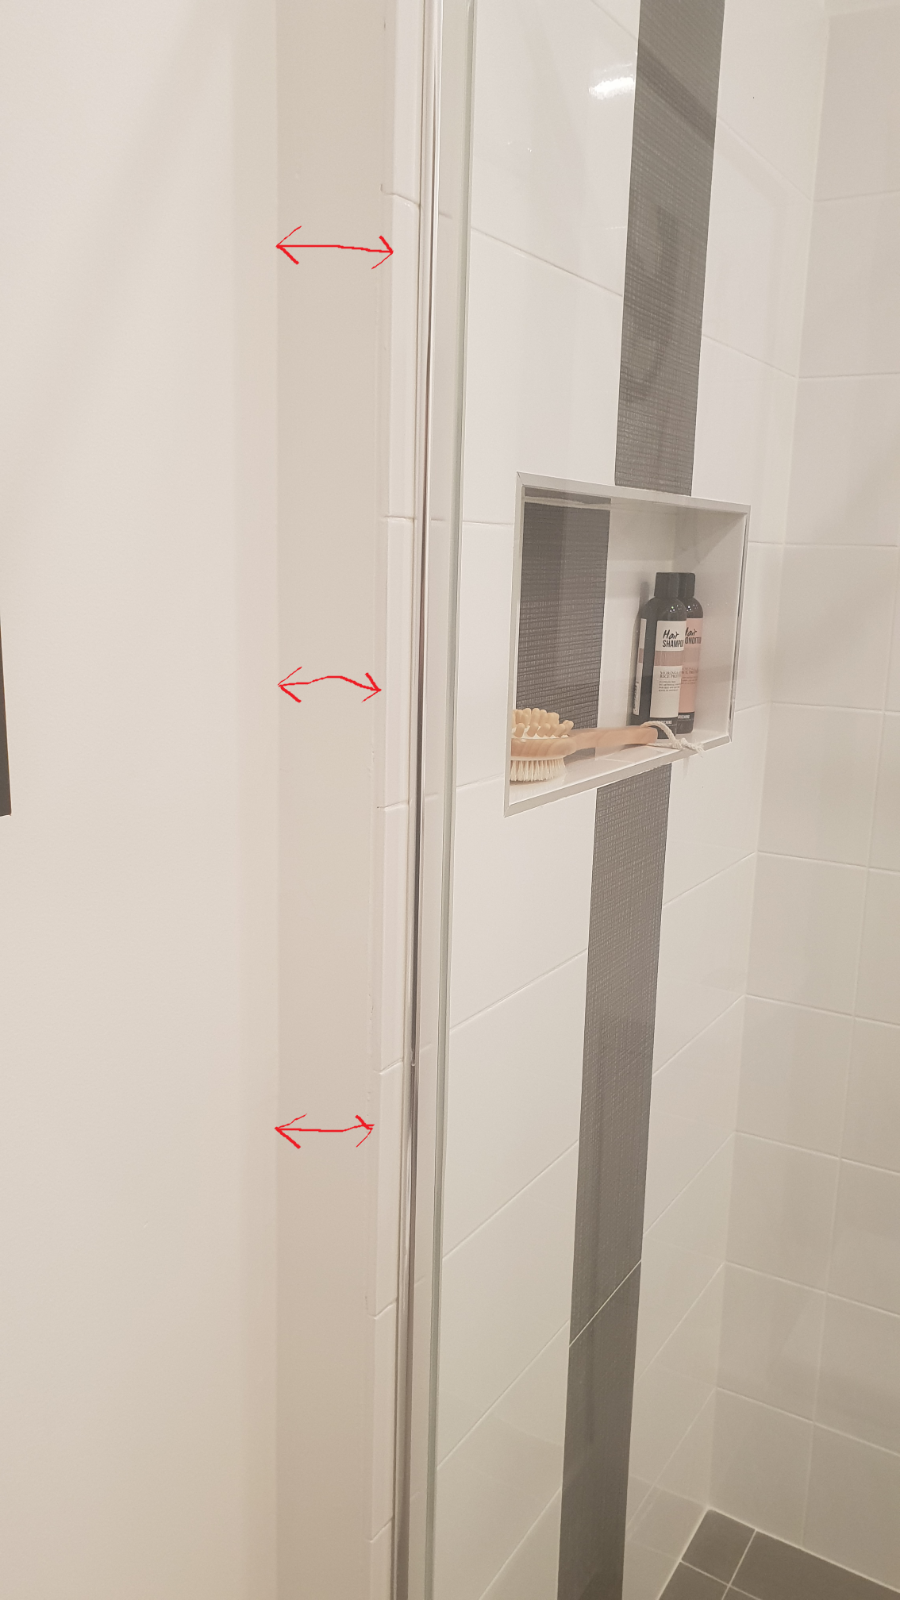 Recessed shower niche